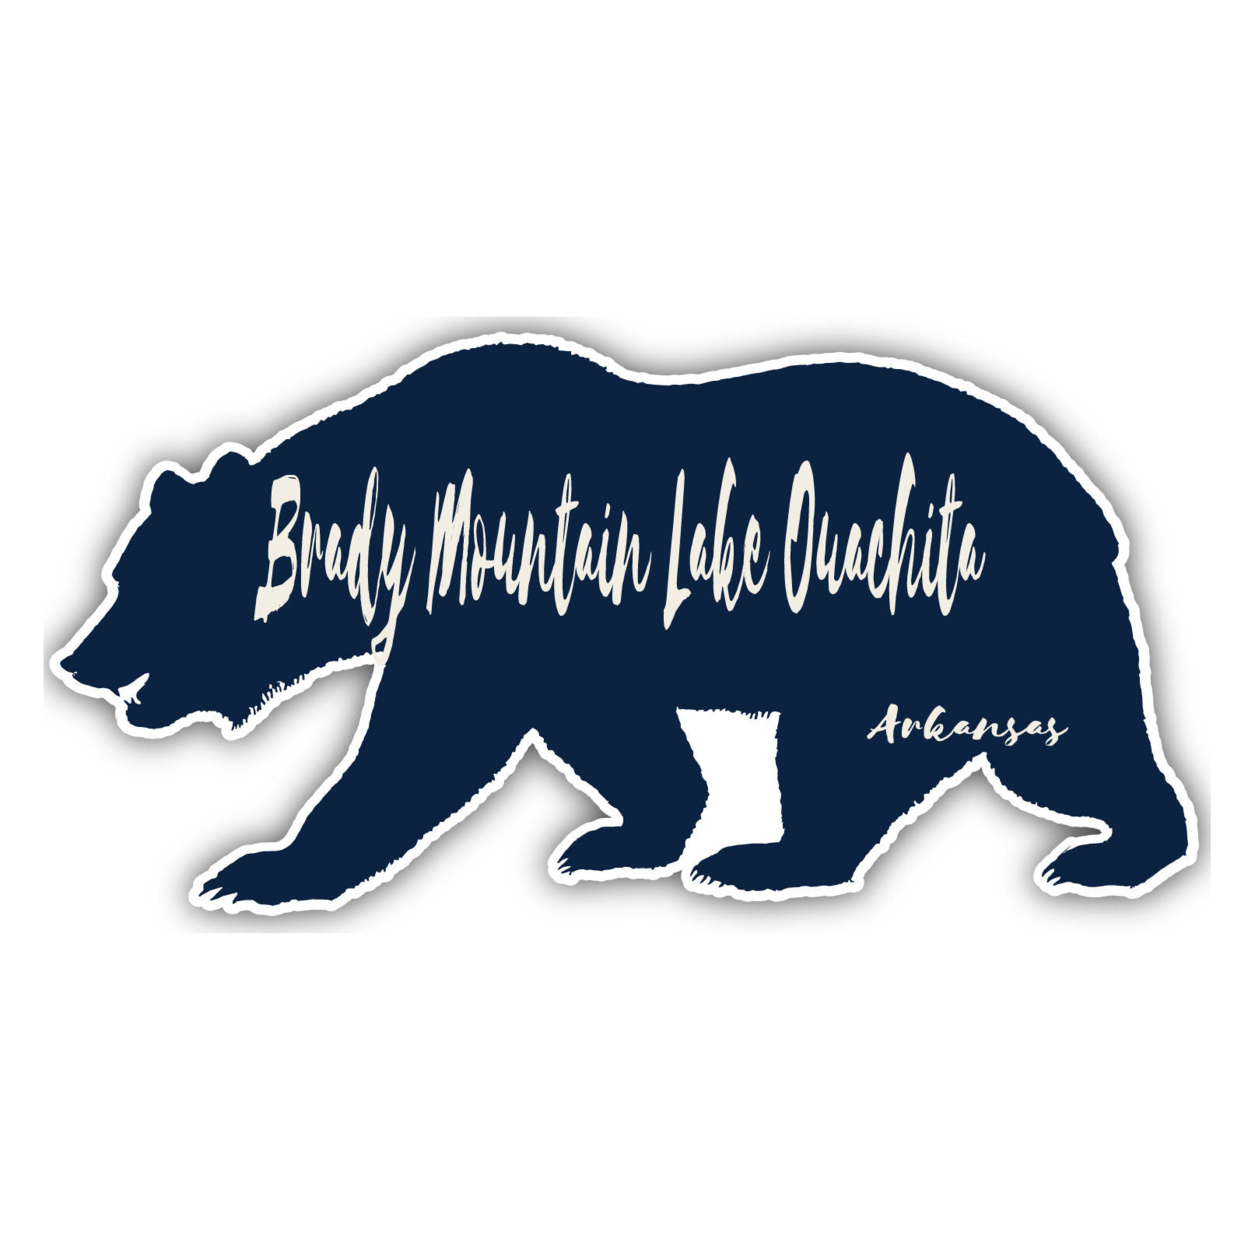 Brady Mountain Lake Ouachita Arkansas Souvenir Decorative Stickers (Choose Theme And Size) - 4-Pack, 2-Inch, Bear